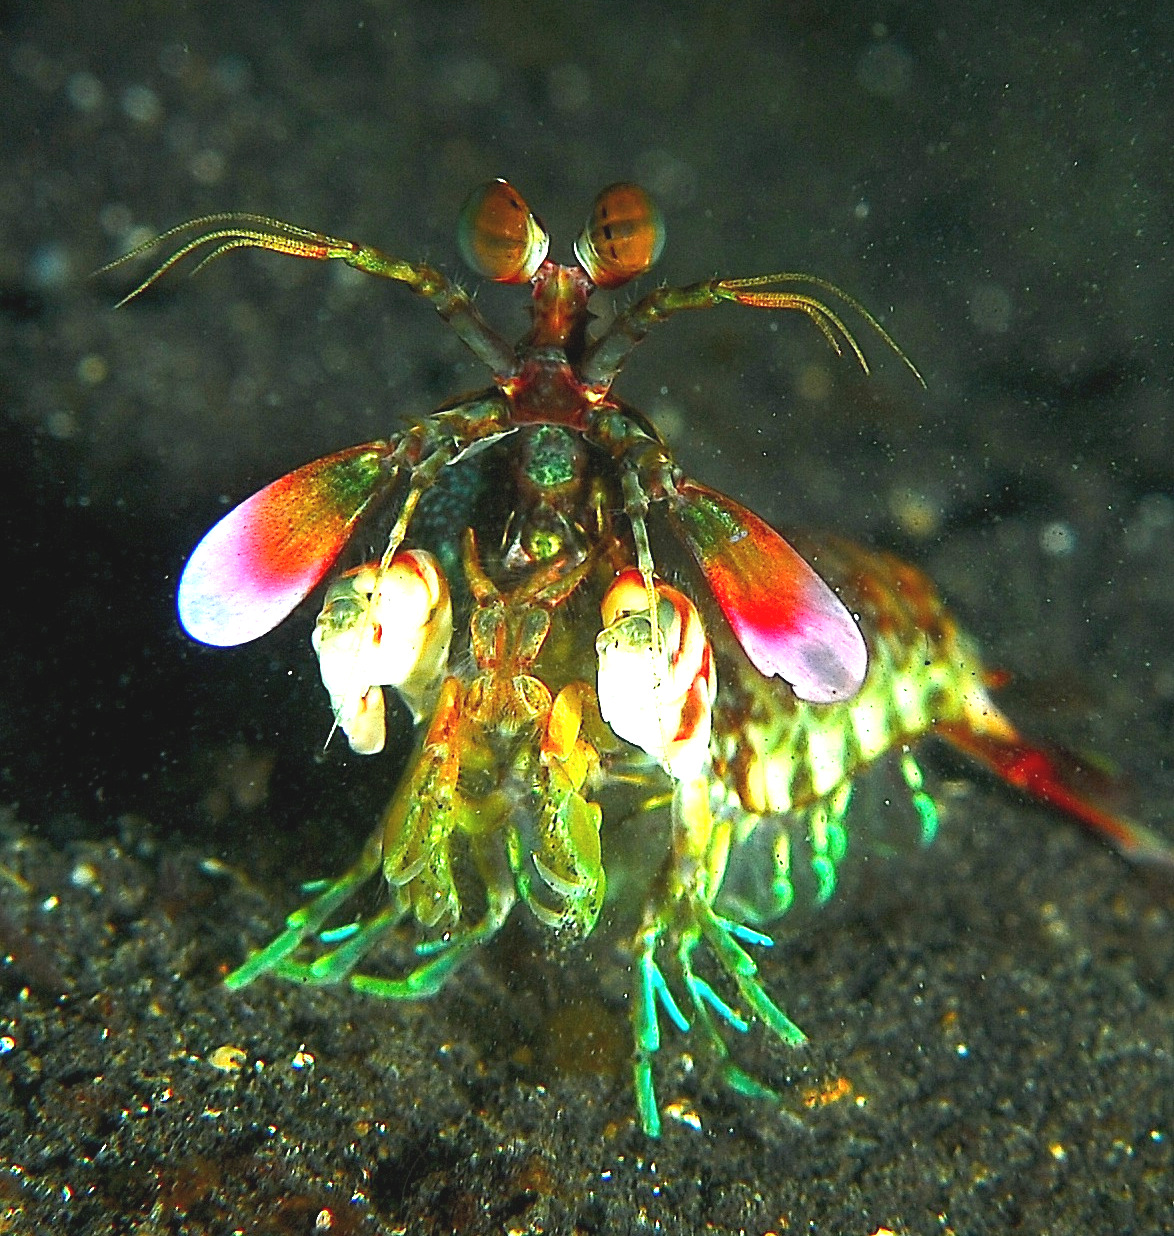 Mantis shrimp